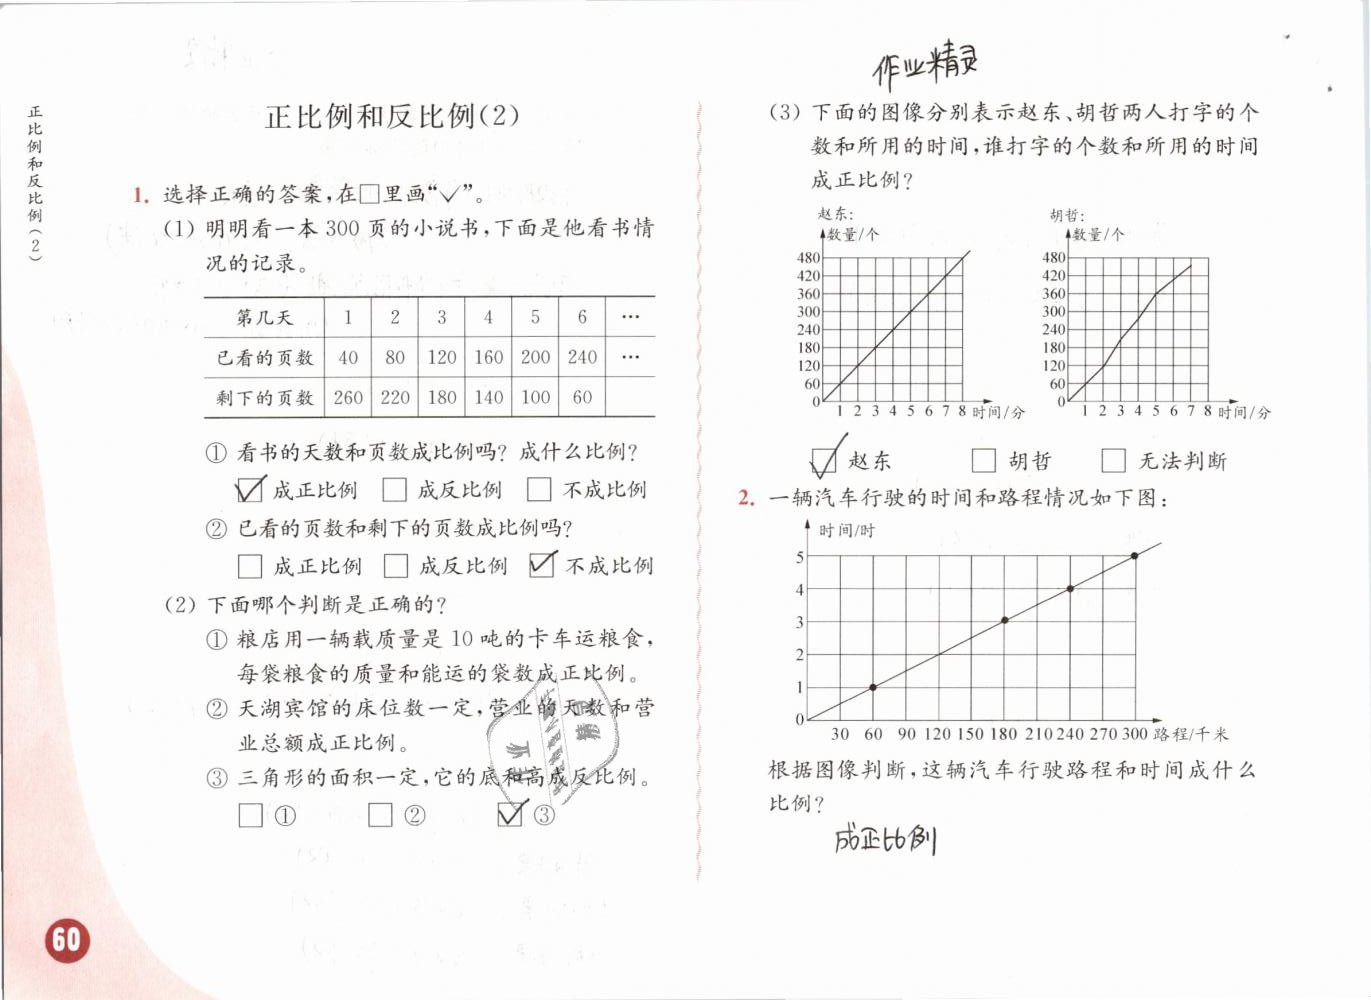 2019年练习与测试小学数学六年级下册苏教版彩色版 第60页